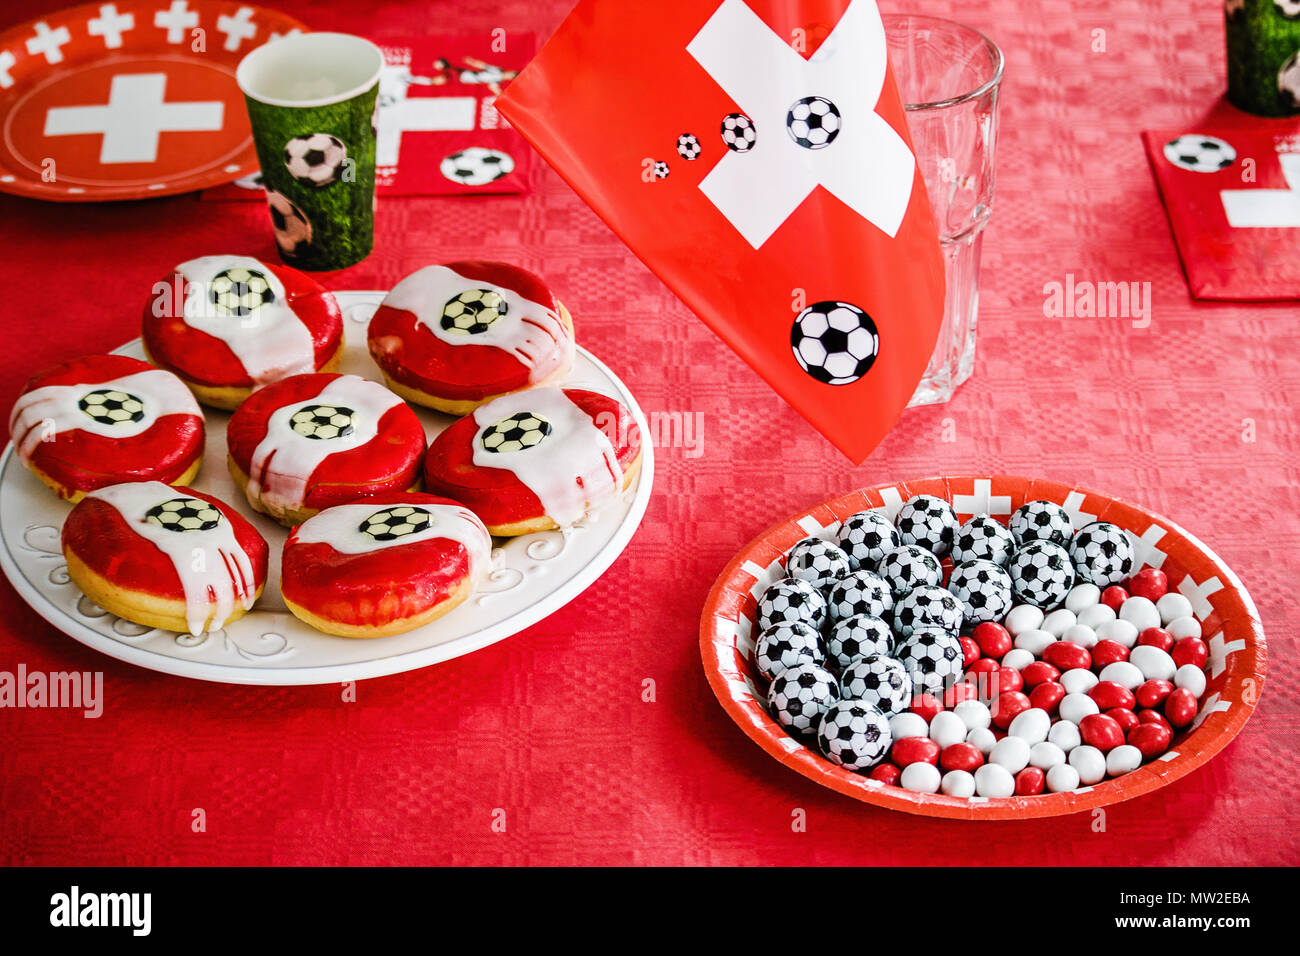 Donuts und Schokolade Süßigkeiten wie kleine Fußbälle auf rotem Tuch  geprägt. Fußball-Party zu Hause. Schweizer Flagge, Fußball Fieber in der  Schweiz Stockfotografie - Alamy